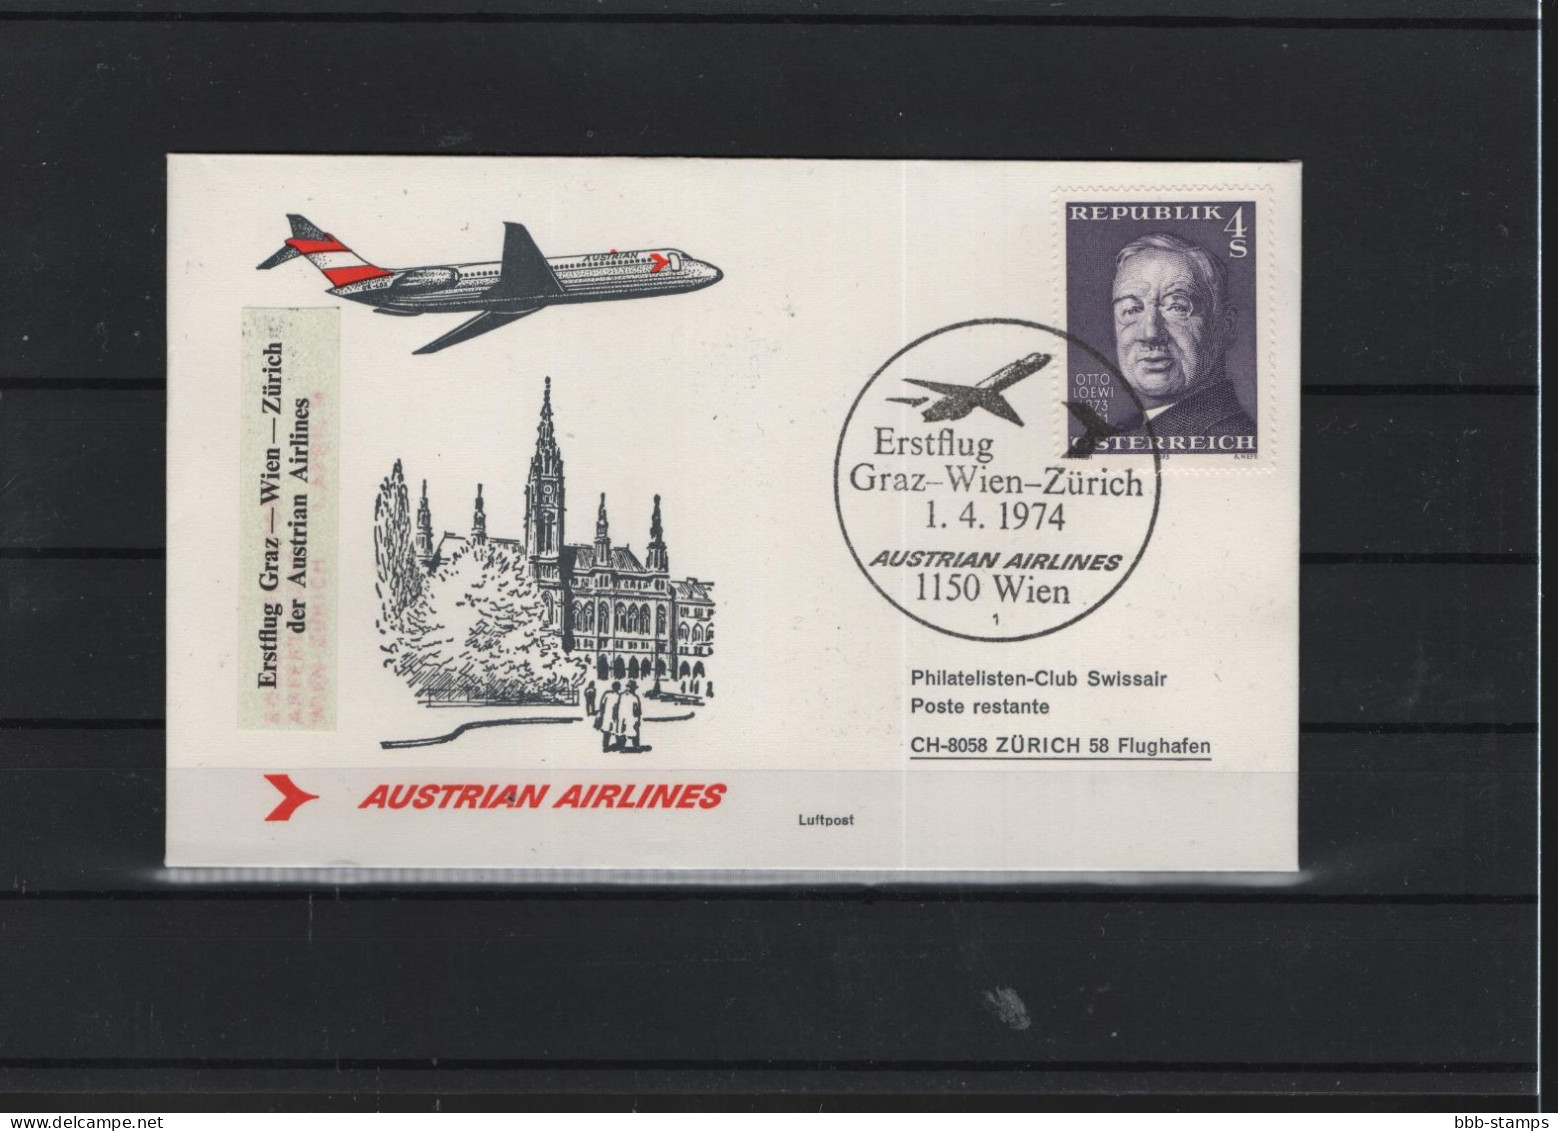 Schweiz Luftpost FFC AUA  1.4.1974 Graz - Wien - Zürich - Primeros Vuelos